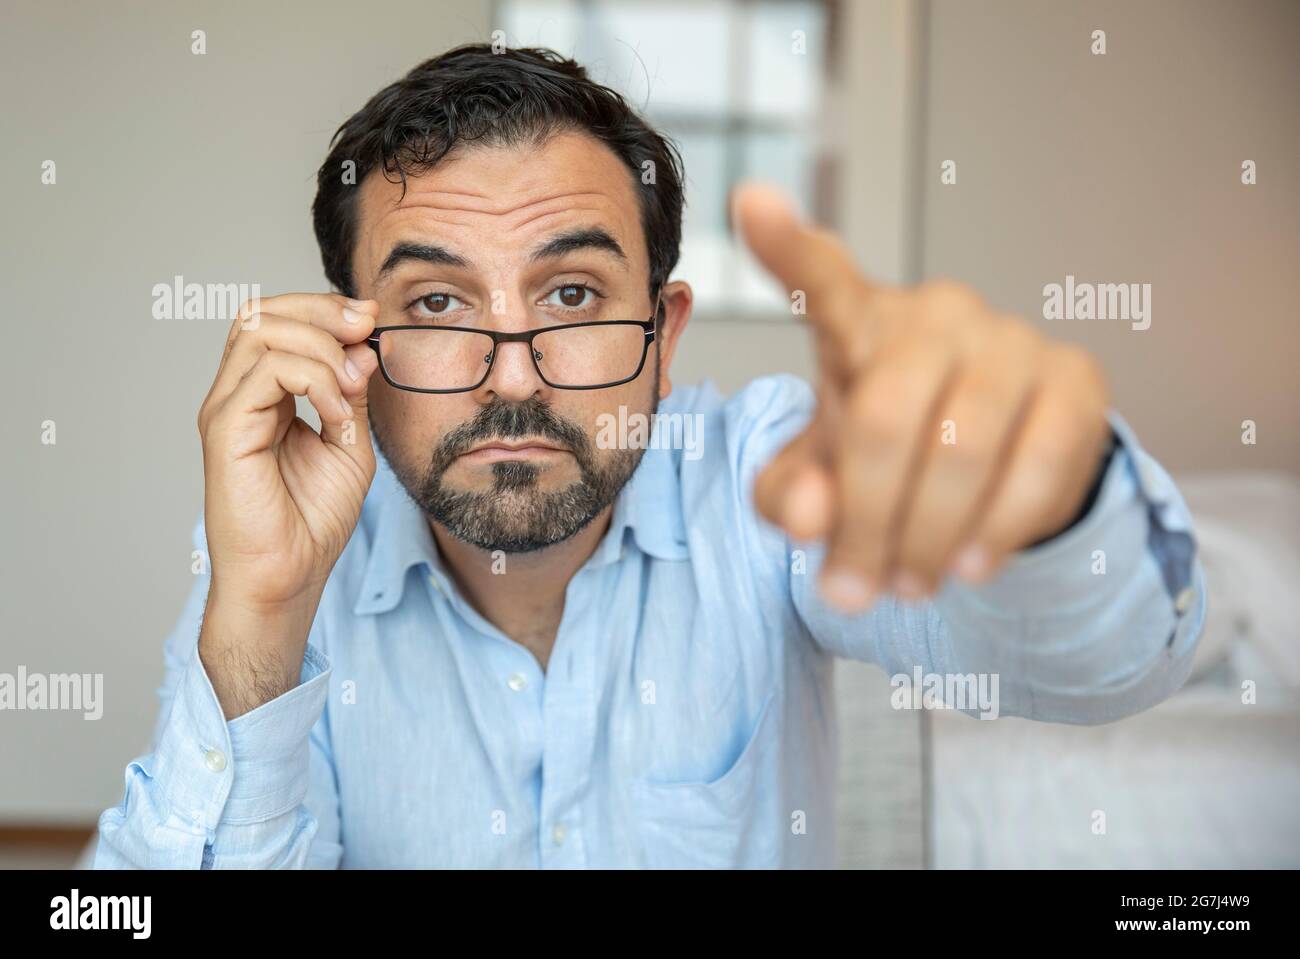 Homme avec une mauvaise vue essayant d'ajuster ses lunettes pour mieux voir Banque D'Images